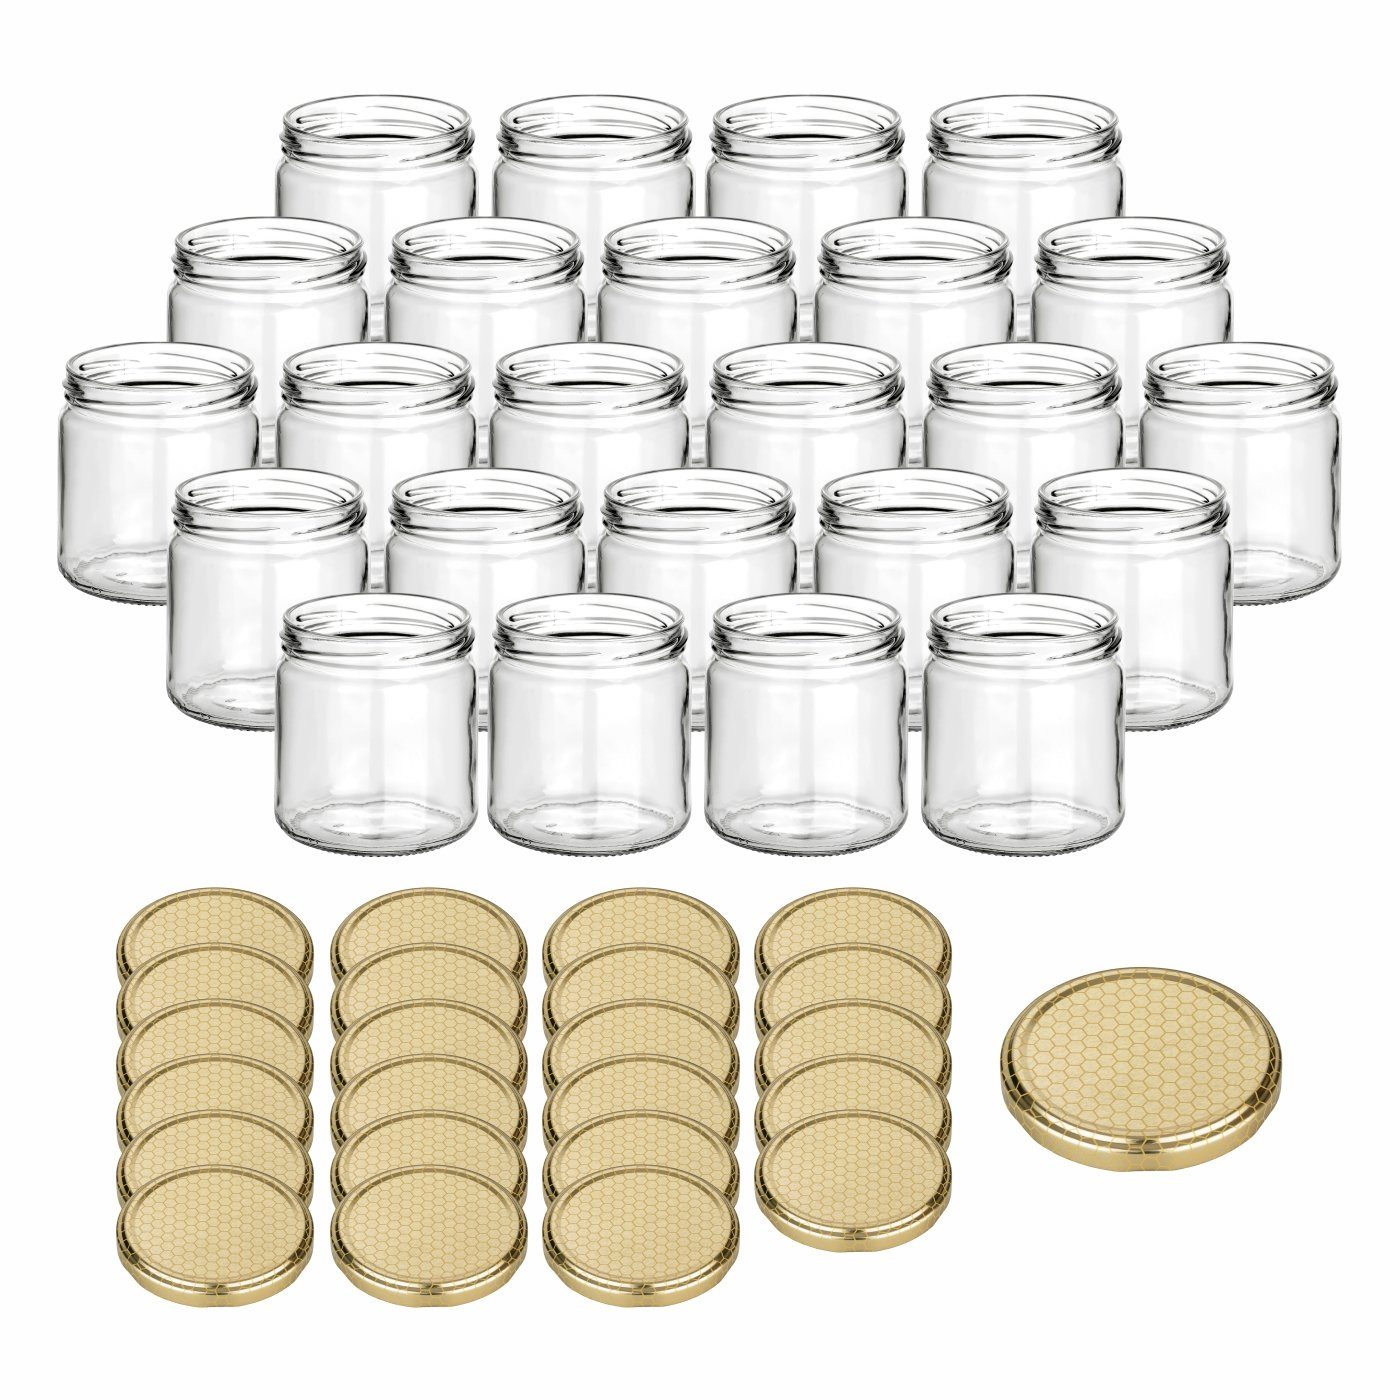 gouveo Honigglas 500g mit Schraub-Deckel - Leere Vorratsgläser 405 ml für Honig, Metall TO82 Bienenwabe, (24-tlg)